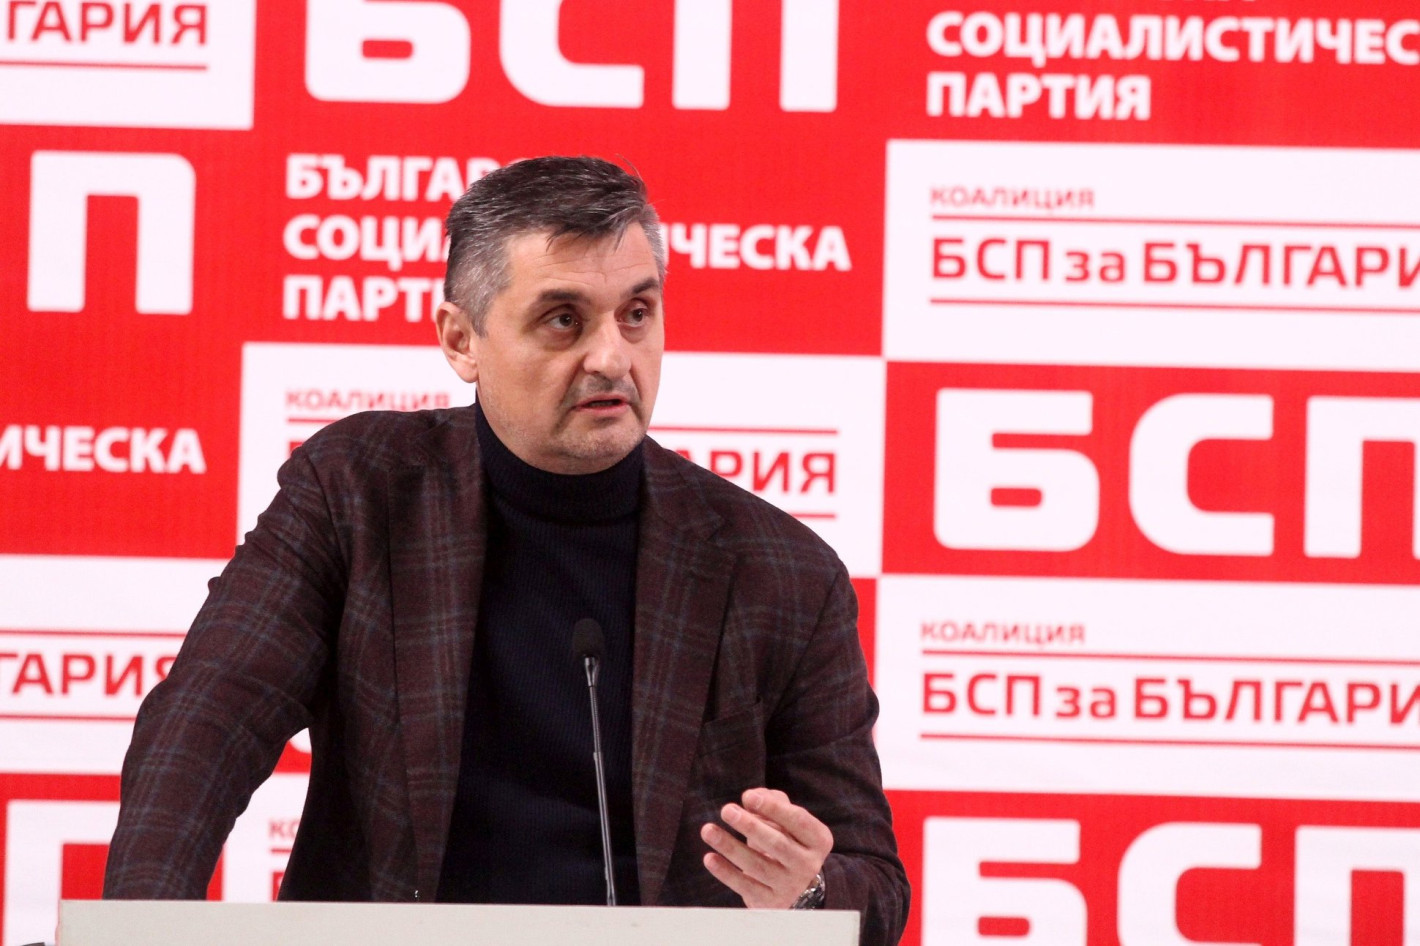 Кирил Добрев: Не съм кандидат за каквото и да било, искам само да помогна на БСП!